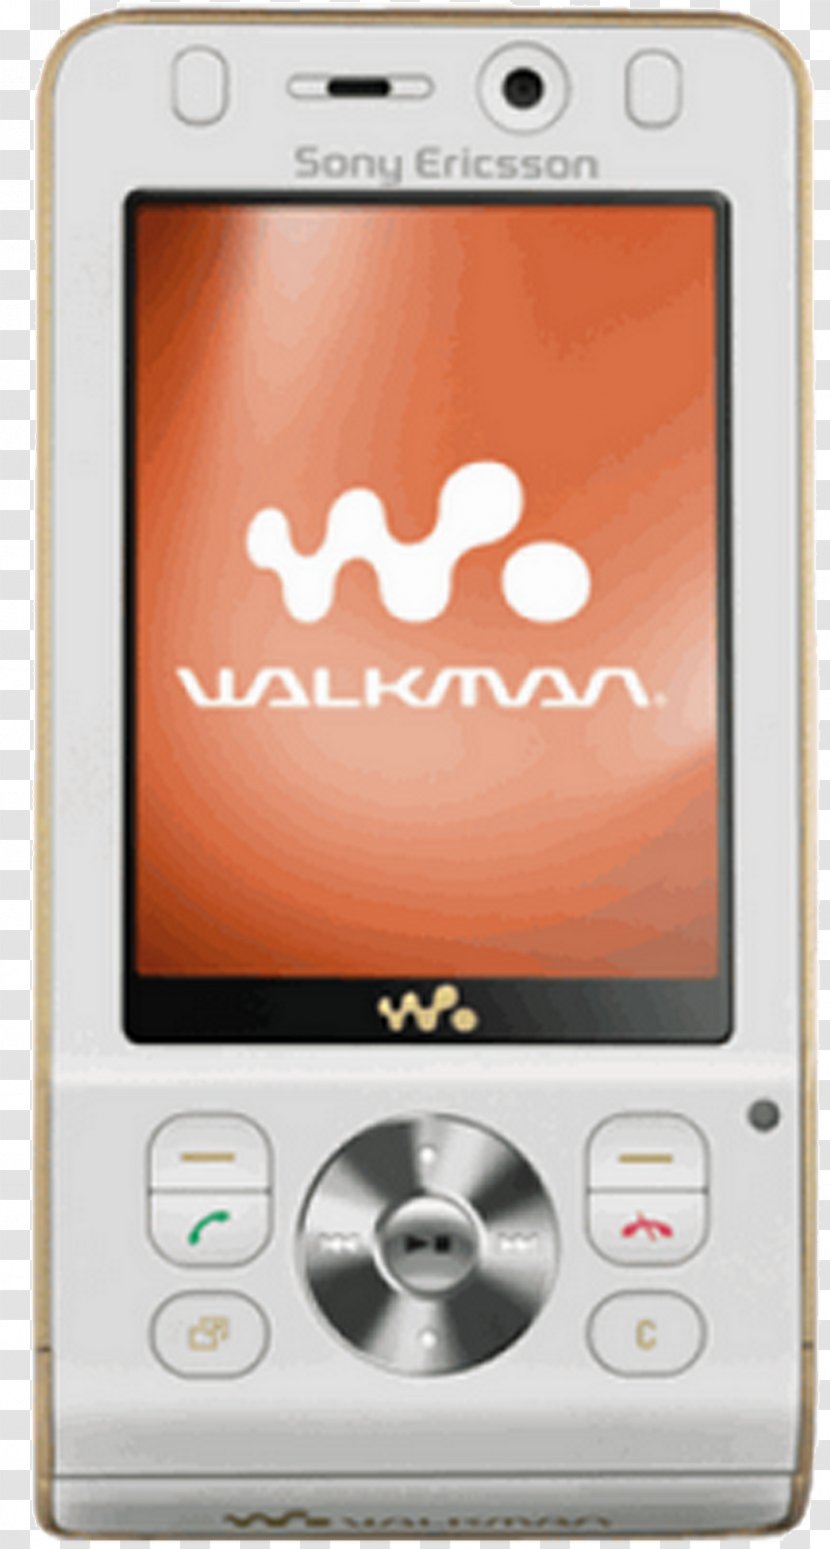 Sony Ericsson W580i W910i W302 Walkman W595 Live With - Electronic Device Transparent PNG